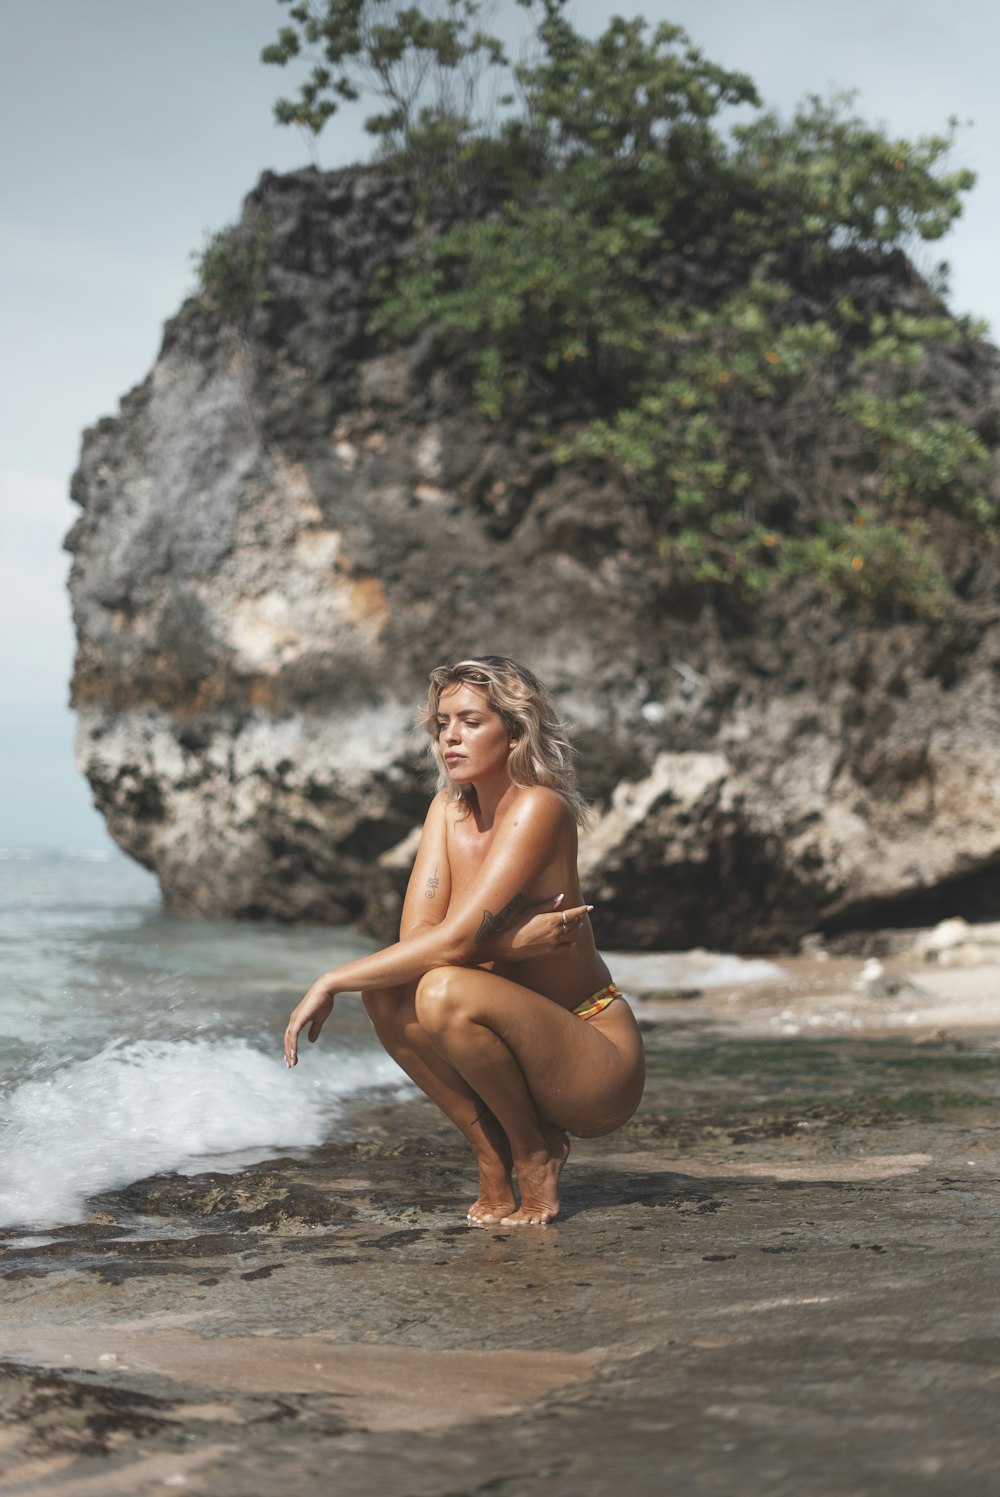 Une femme agenouillée sur une plage au bord de l’océan